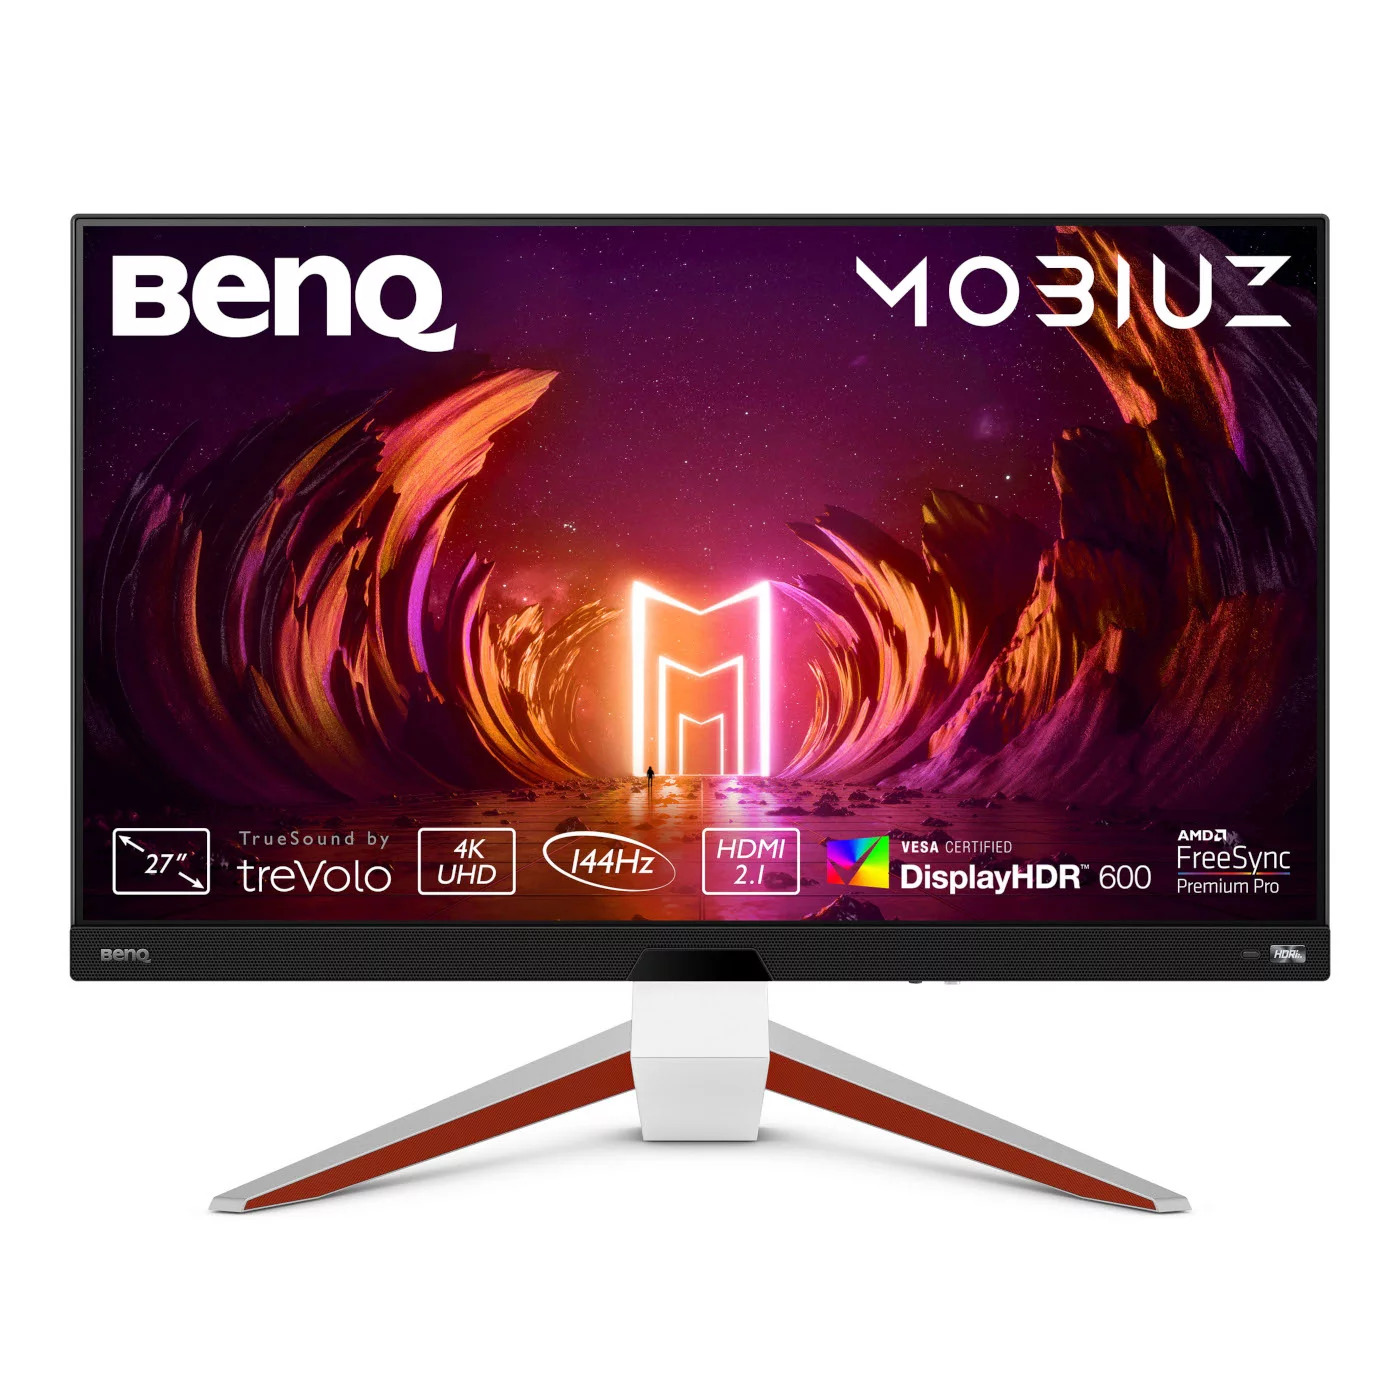 Monitor BenQ MOBIUZ 27" EX2710U IPS 4K 144Hz / 120Hz (PS5/Xbox X) 1ms FreeSync Premium Pro